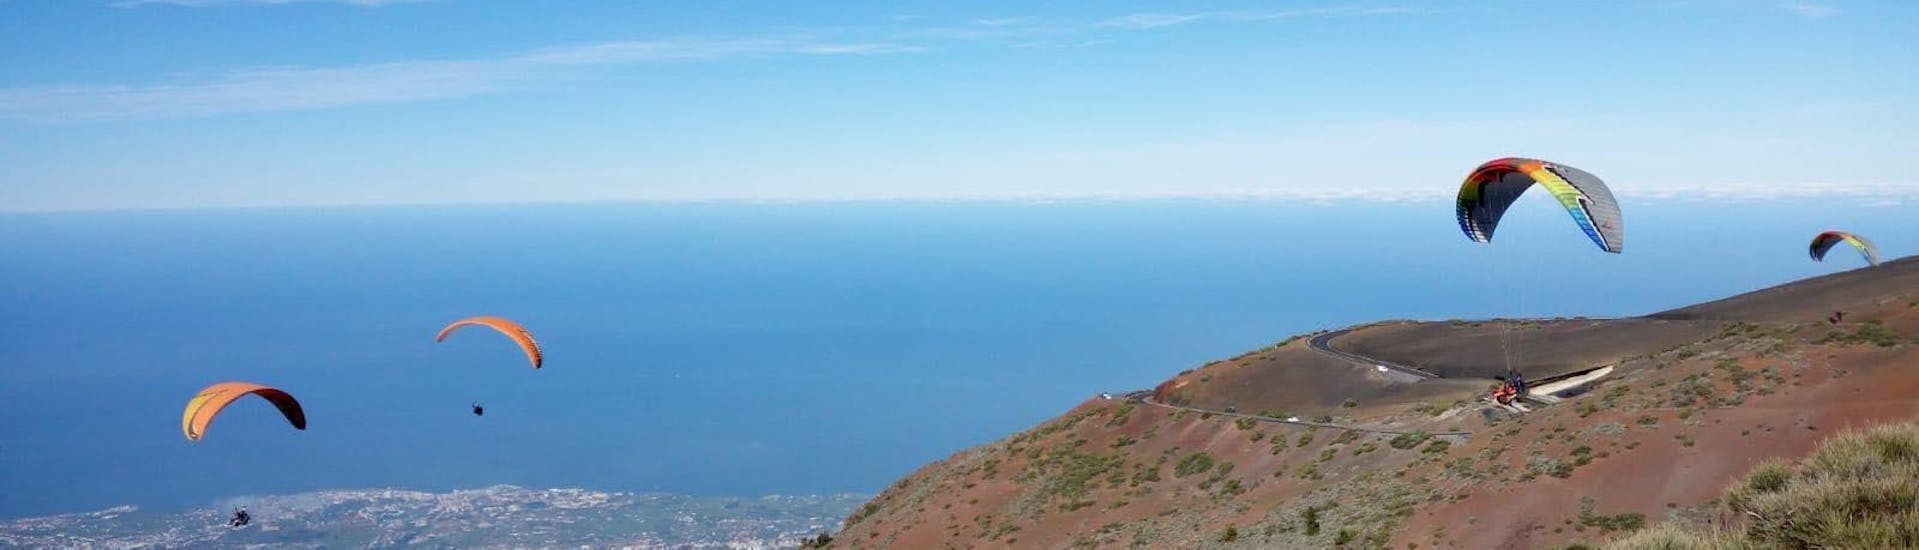 Vol en parapente panoramique - Parc national du Teide.